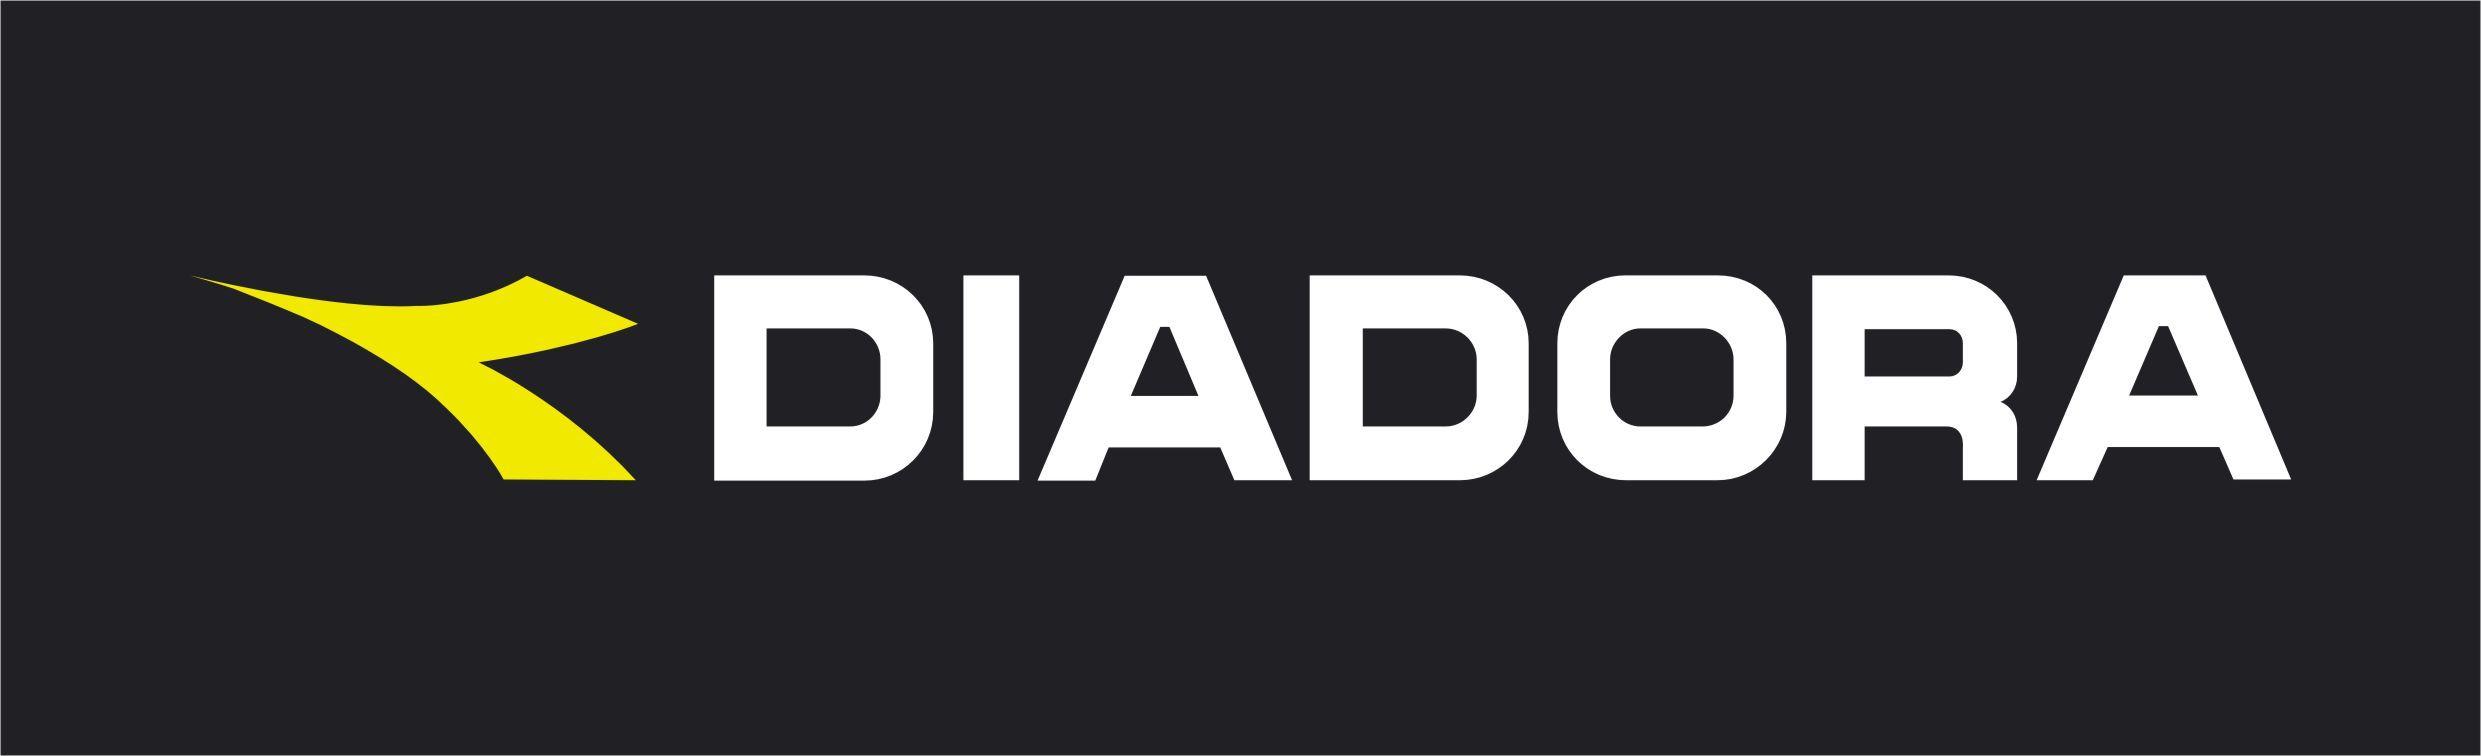 Diadora Logo - Shopping in the Treviso province to Italy